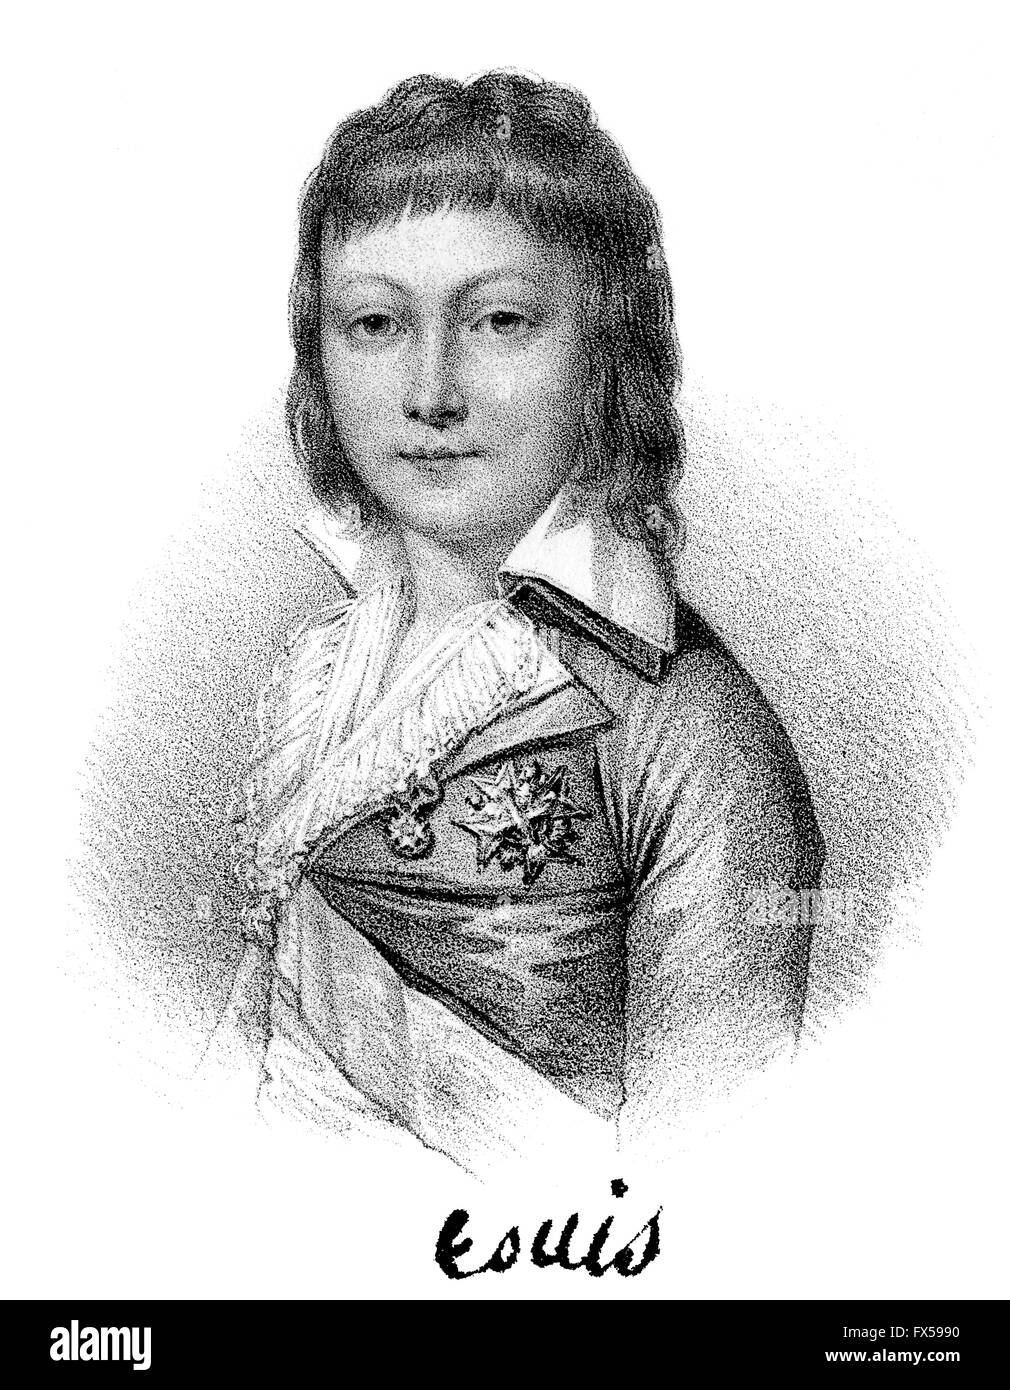 Louis XVII, Louis Charles de Bourbon, dauphin de France, 1785-1795, Prince Royal de France Banque D'Images